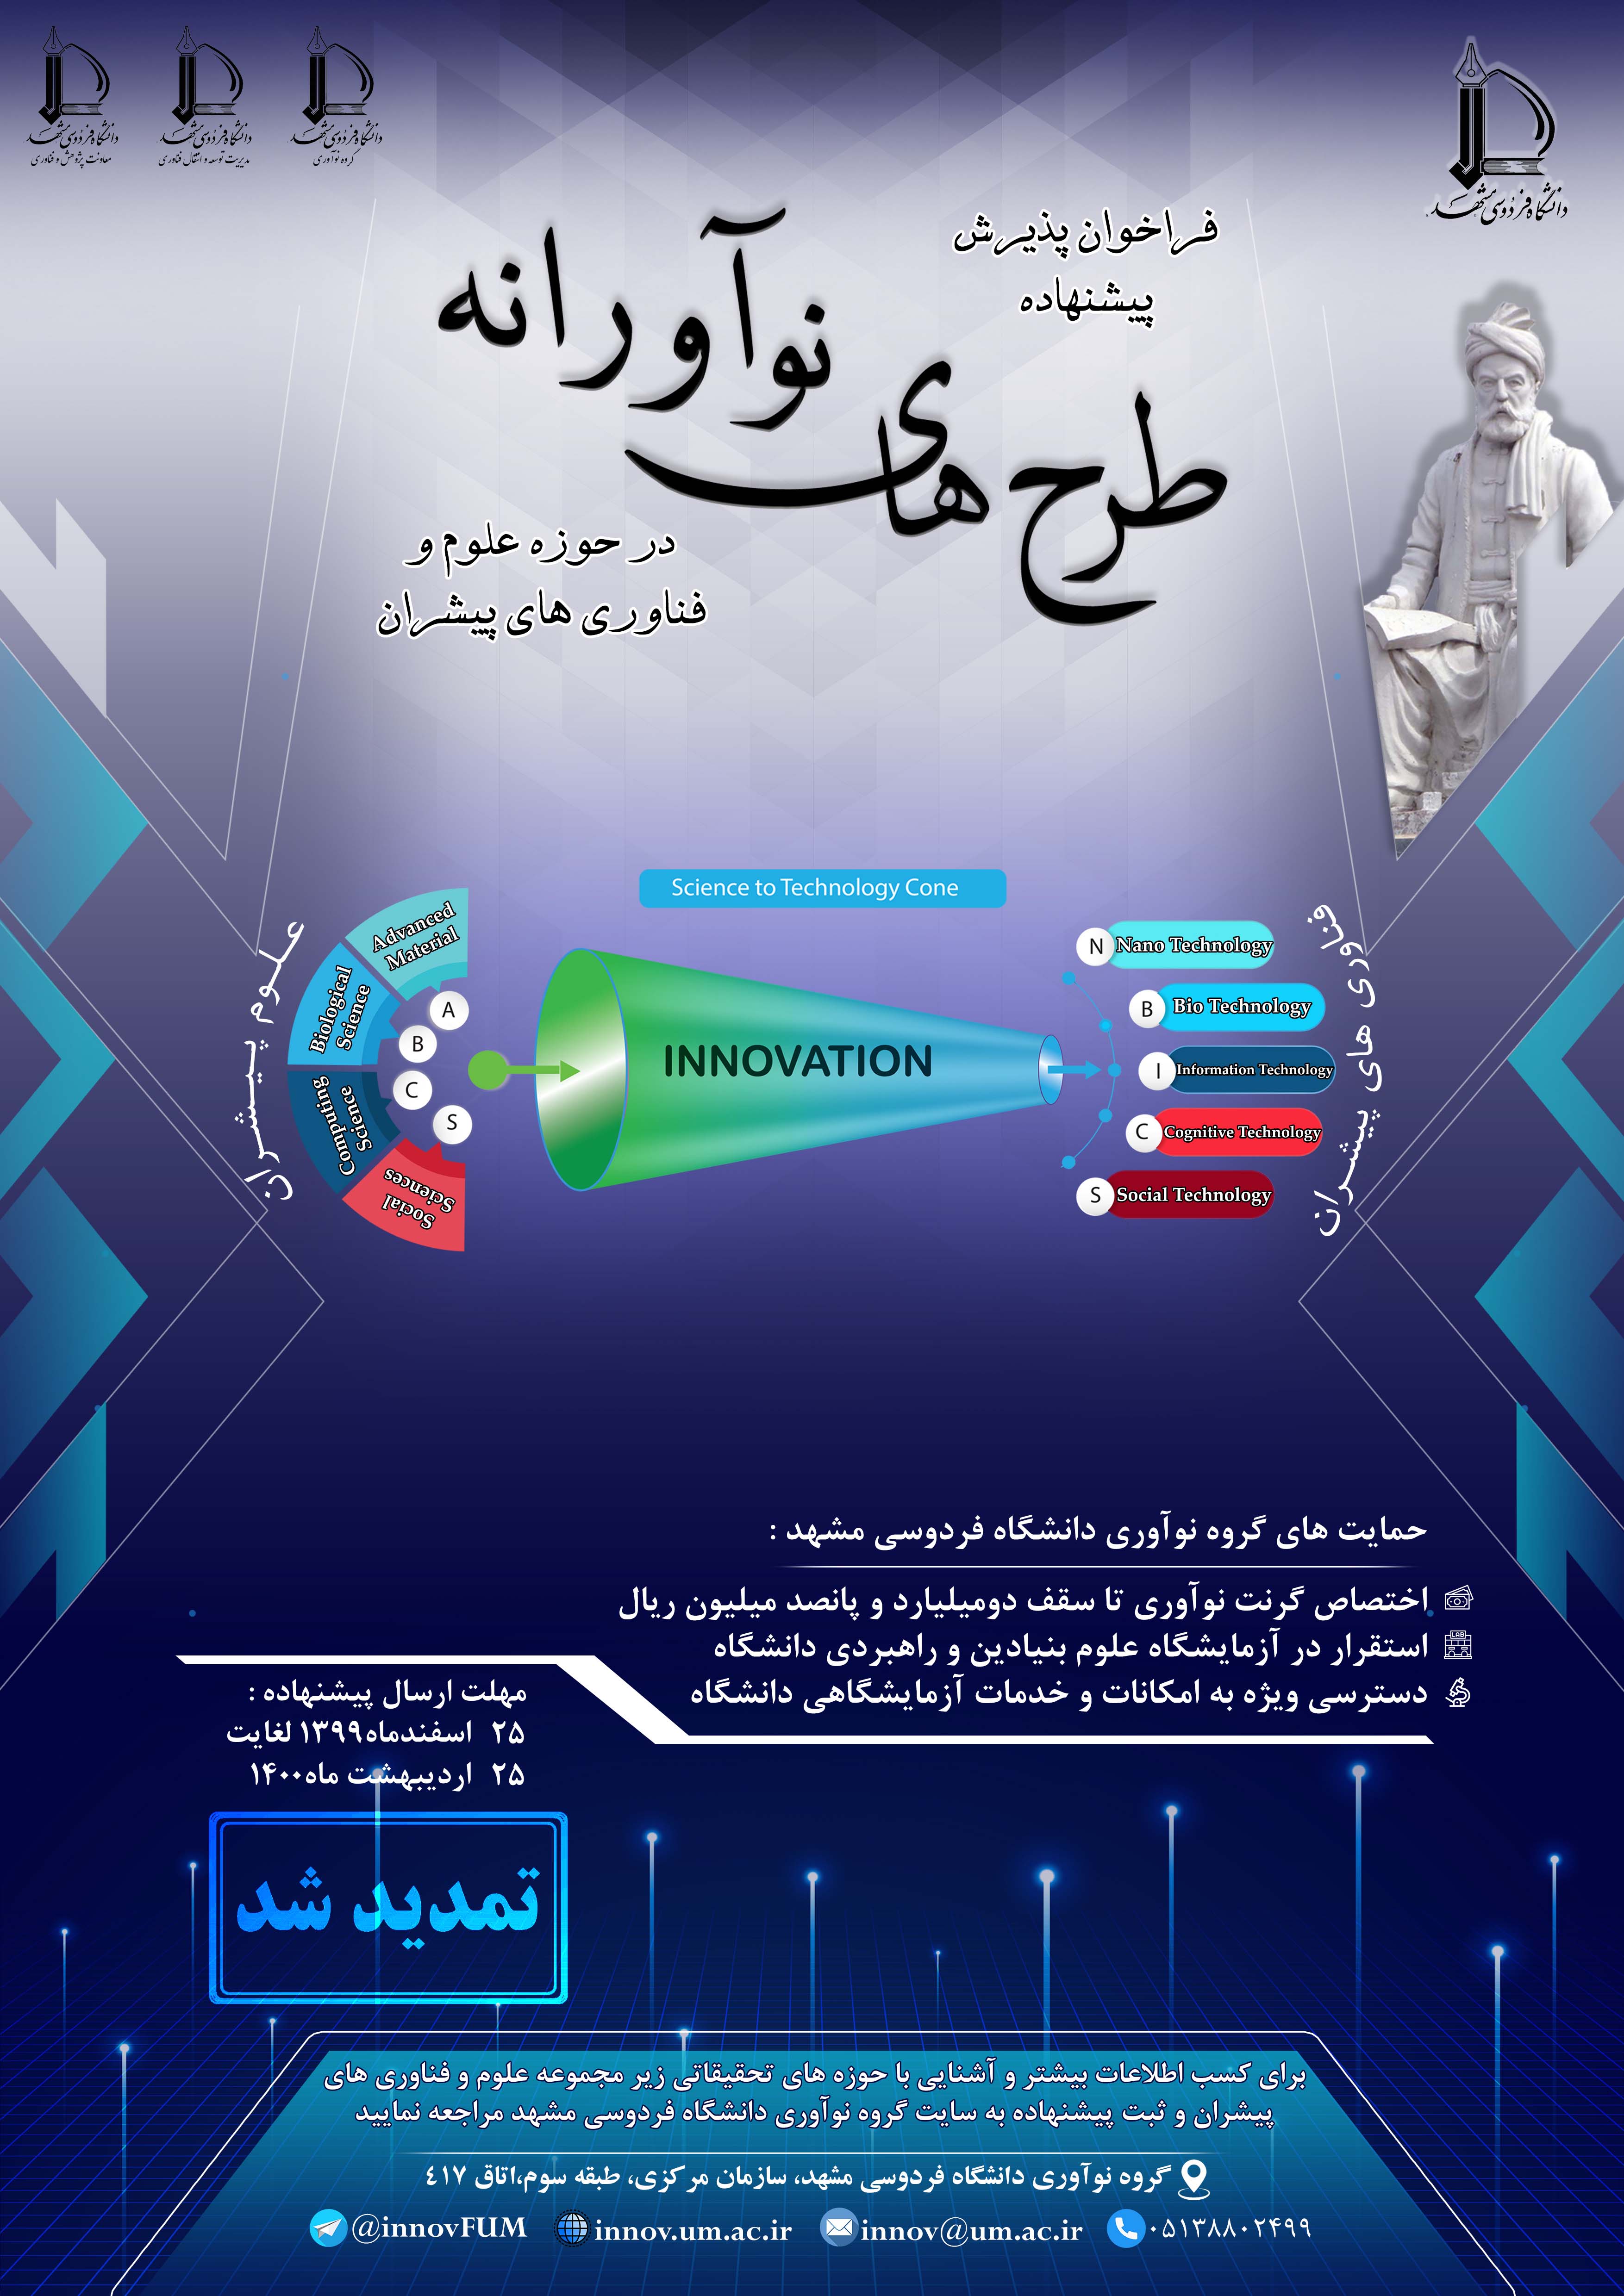  تمدید مهلت ارسال پیشنهاده طرح های نوآورانه در حوزه علوم و فناوری های پیشران دانشگاه فردوسی مشهد